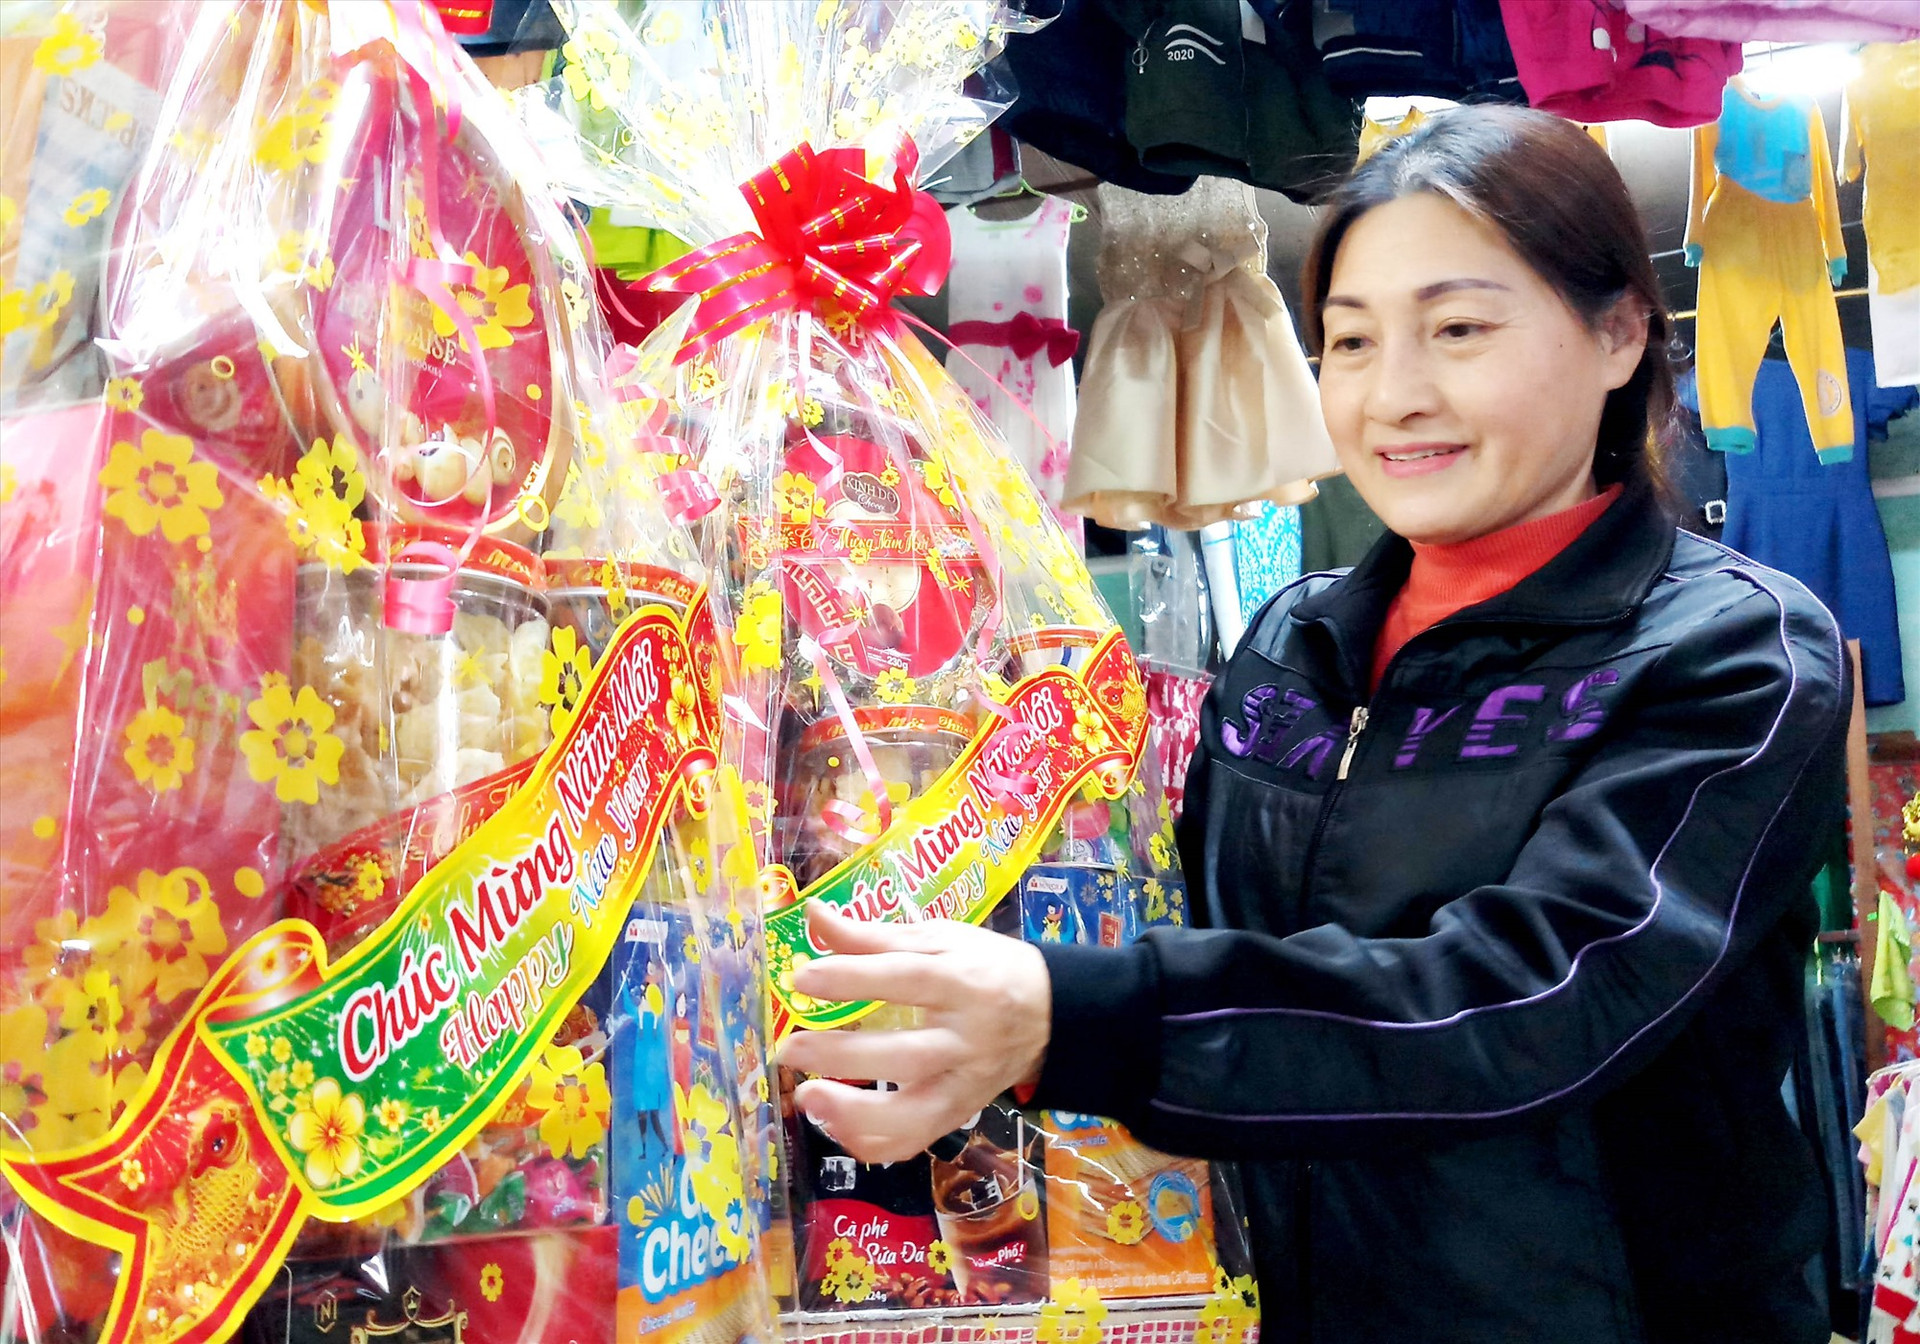 Vắng khách, thời gian gần đây, bà Nguyễn Thị Sâm - chủ tạp hóa Sâm Thông nhận gói những giỏ bánh kẹo được cơ quan, đơn vị đặt làm quà biếu. Ảnh: ĐĂNG NGUYÊN